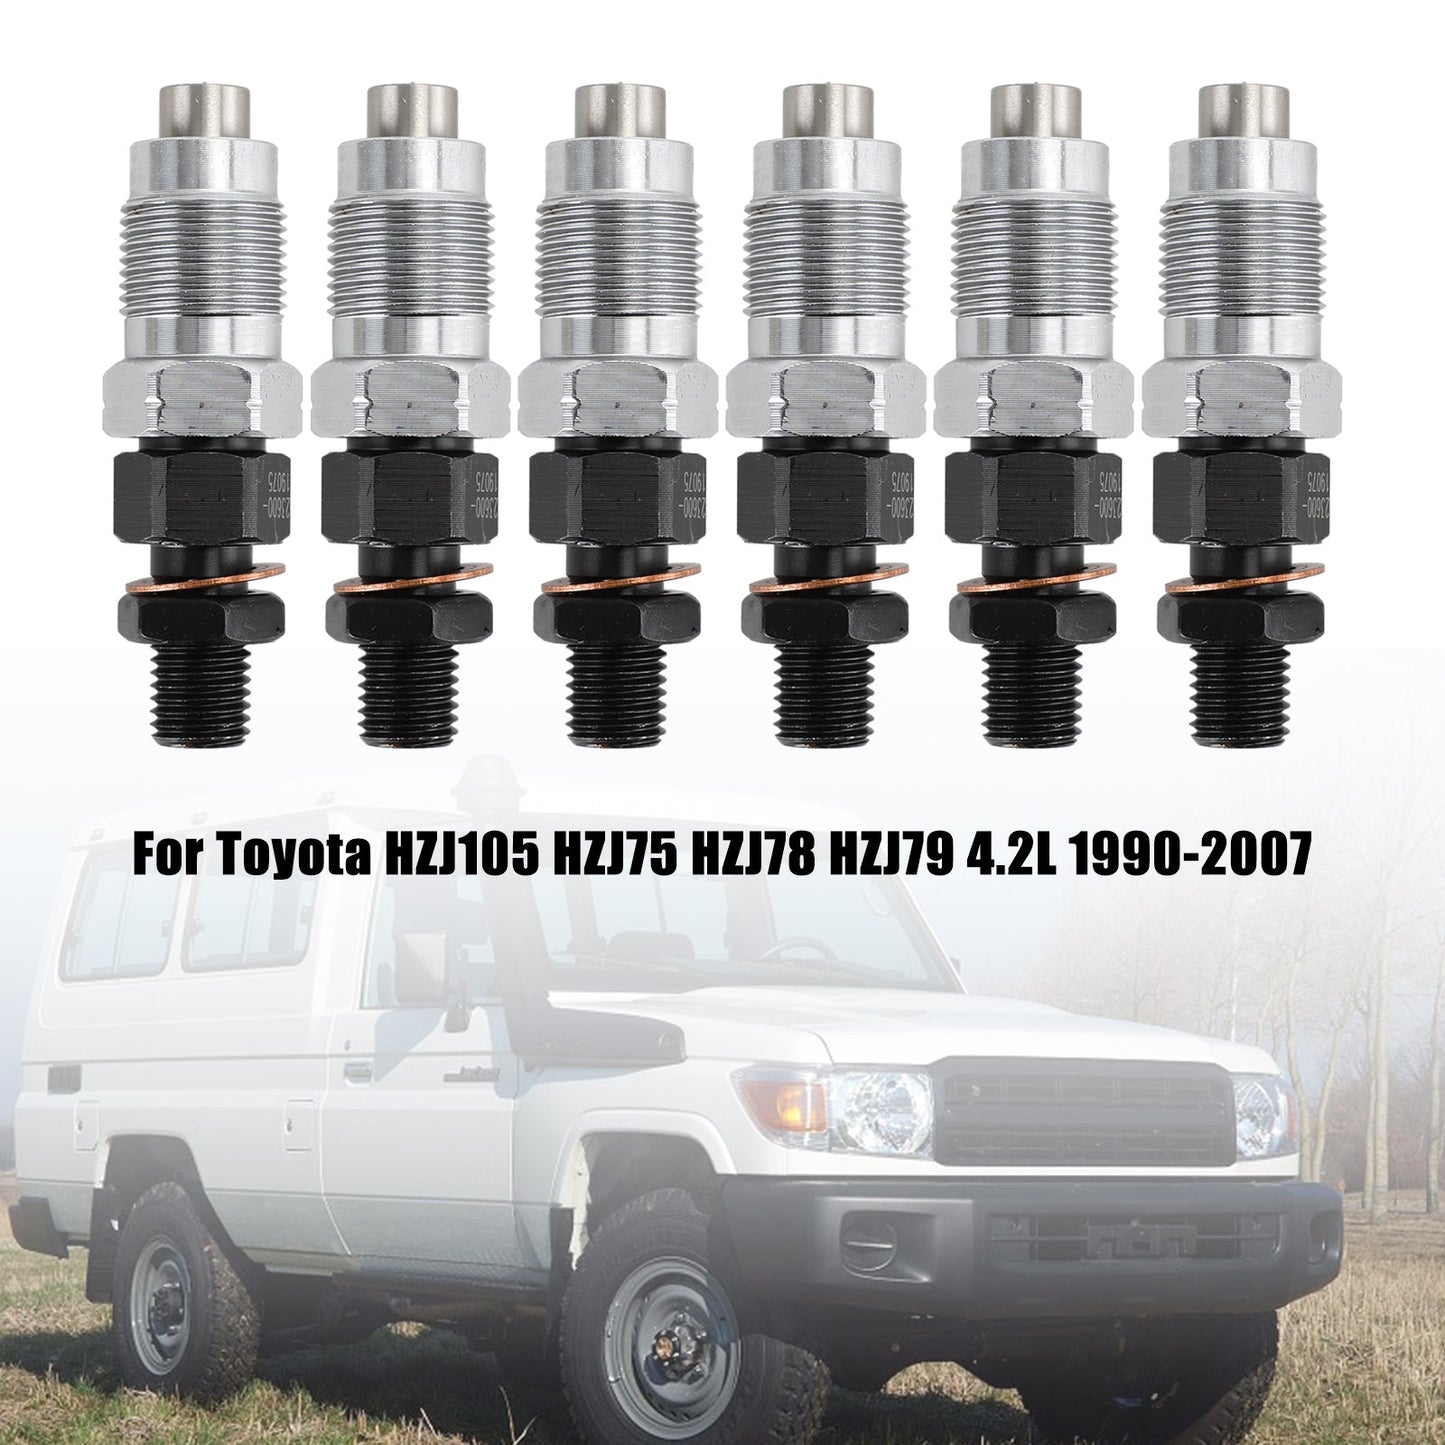 1990-2007 Toyota HZJ105 HZJ75 HZJ78 HZJ79 6 pièces Injecteurs de Carburant 23600-19075 Fedex Express